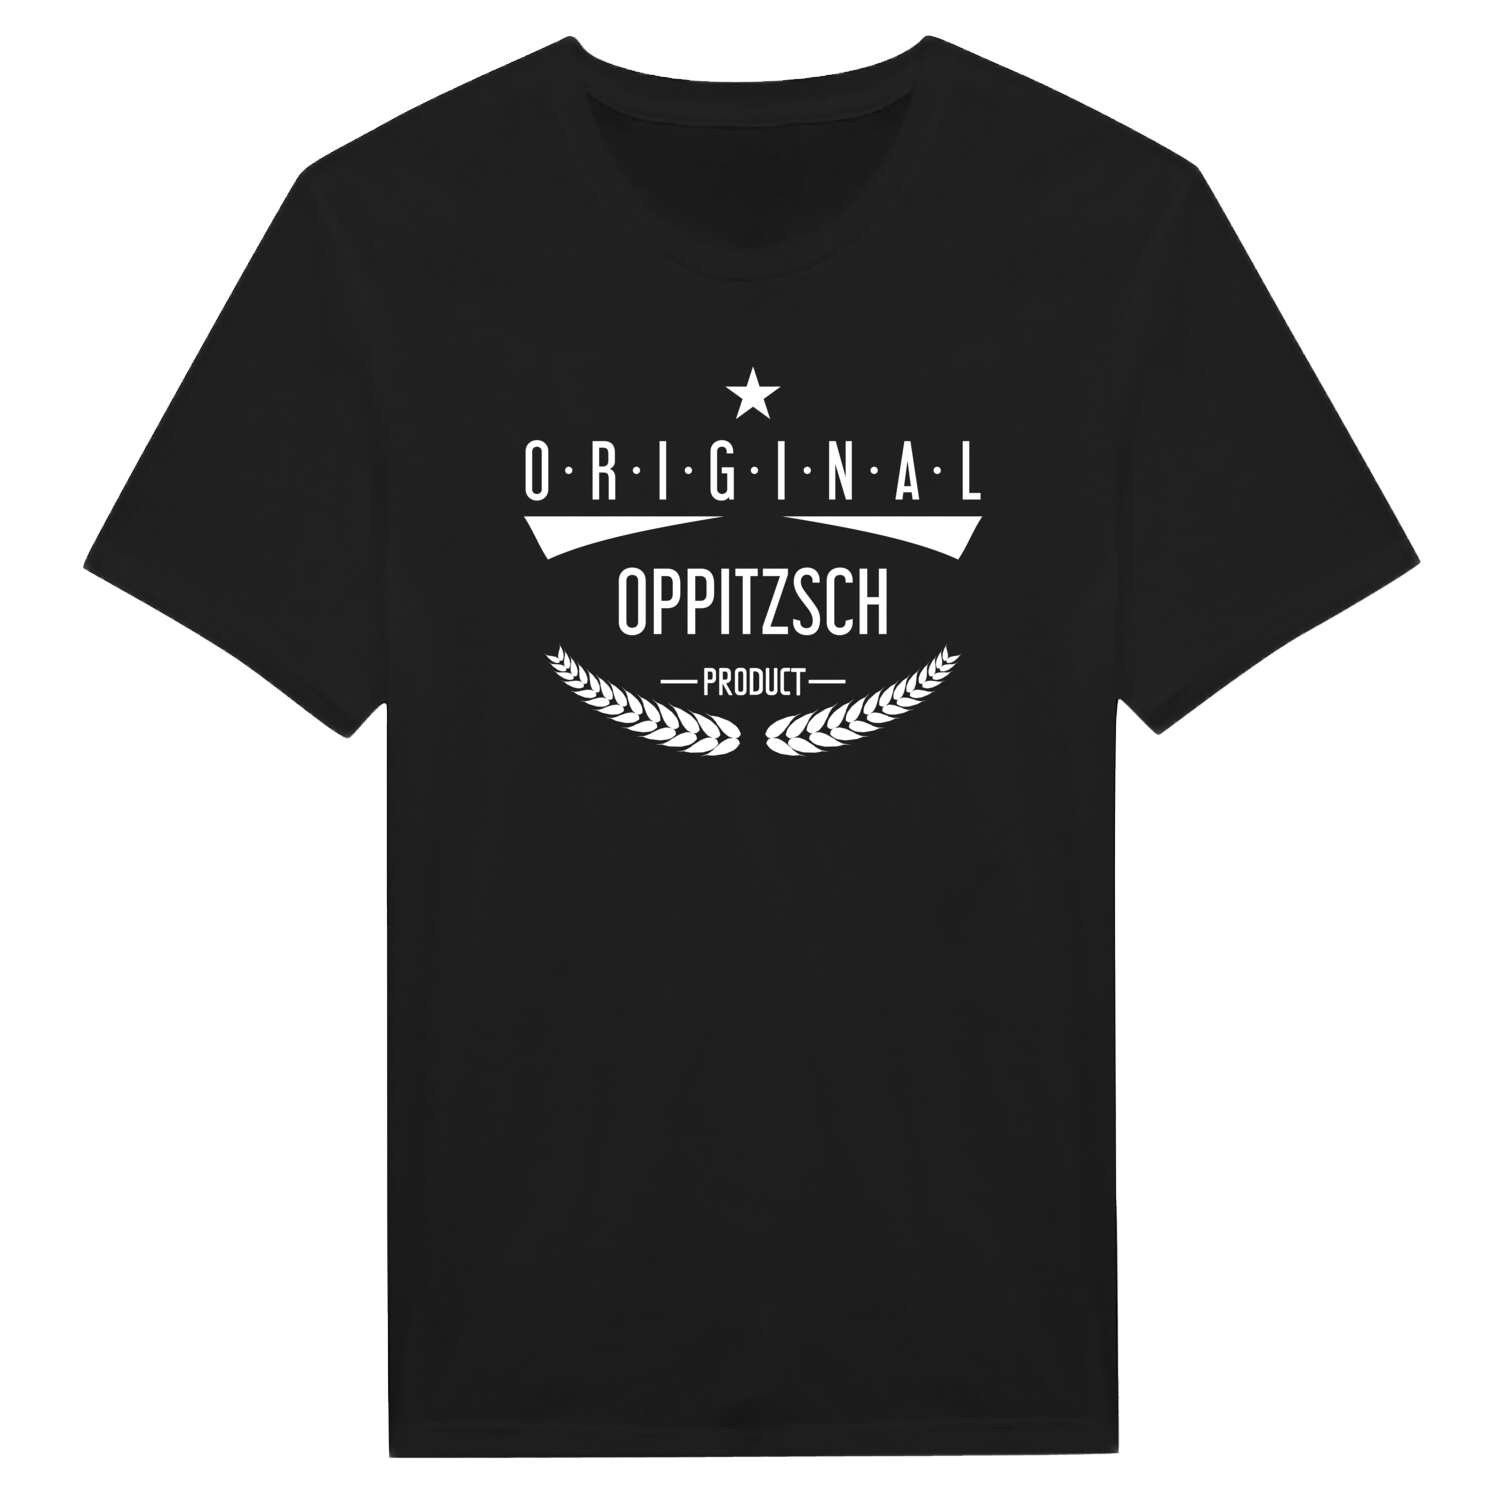 Oppitzsch T-Shirt »Original Product«